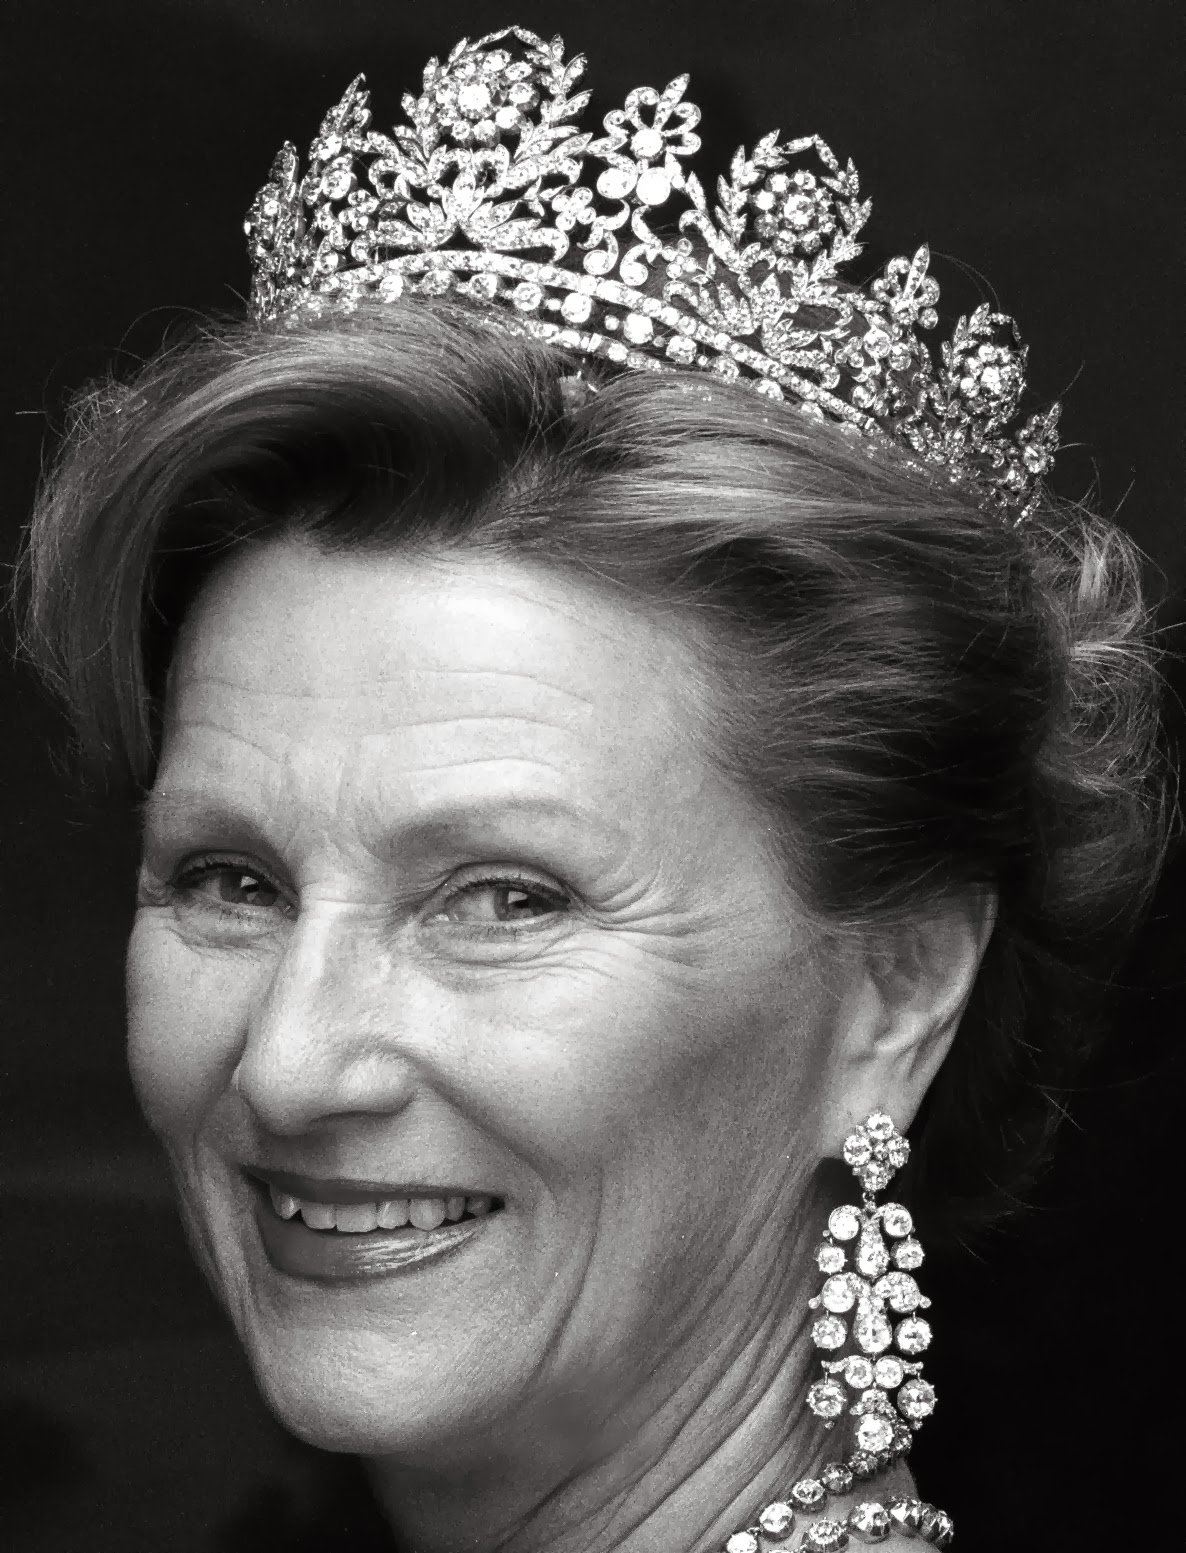 La Reina Sonia de Noruega con la Tiara Desirée - WEB - Feb